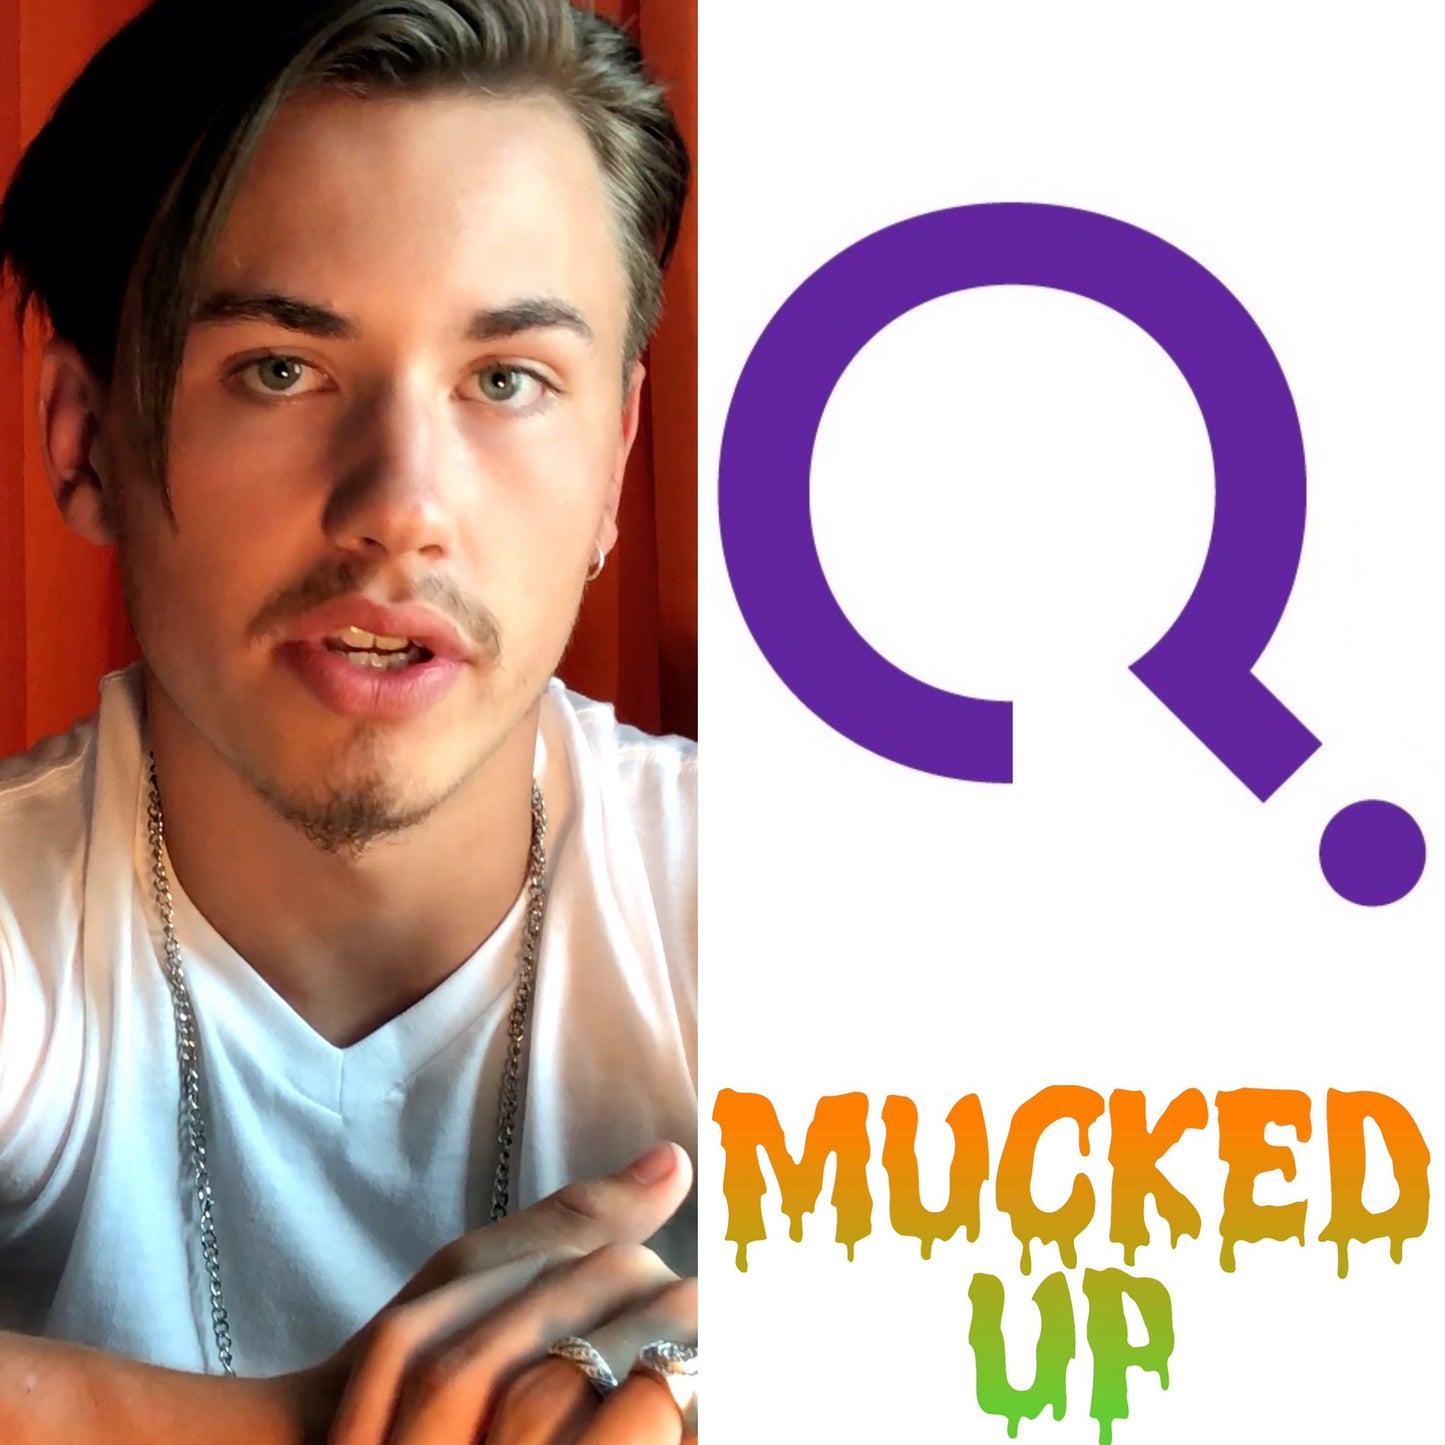 Mucked Up - Jordan B